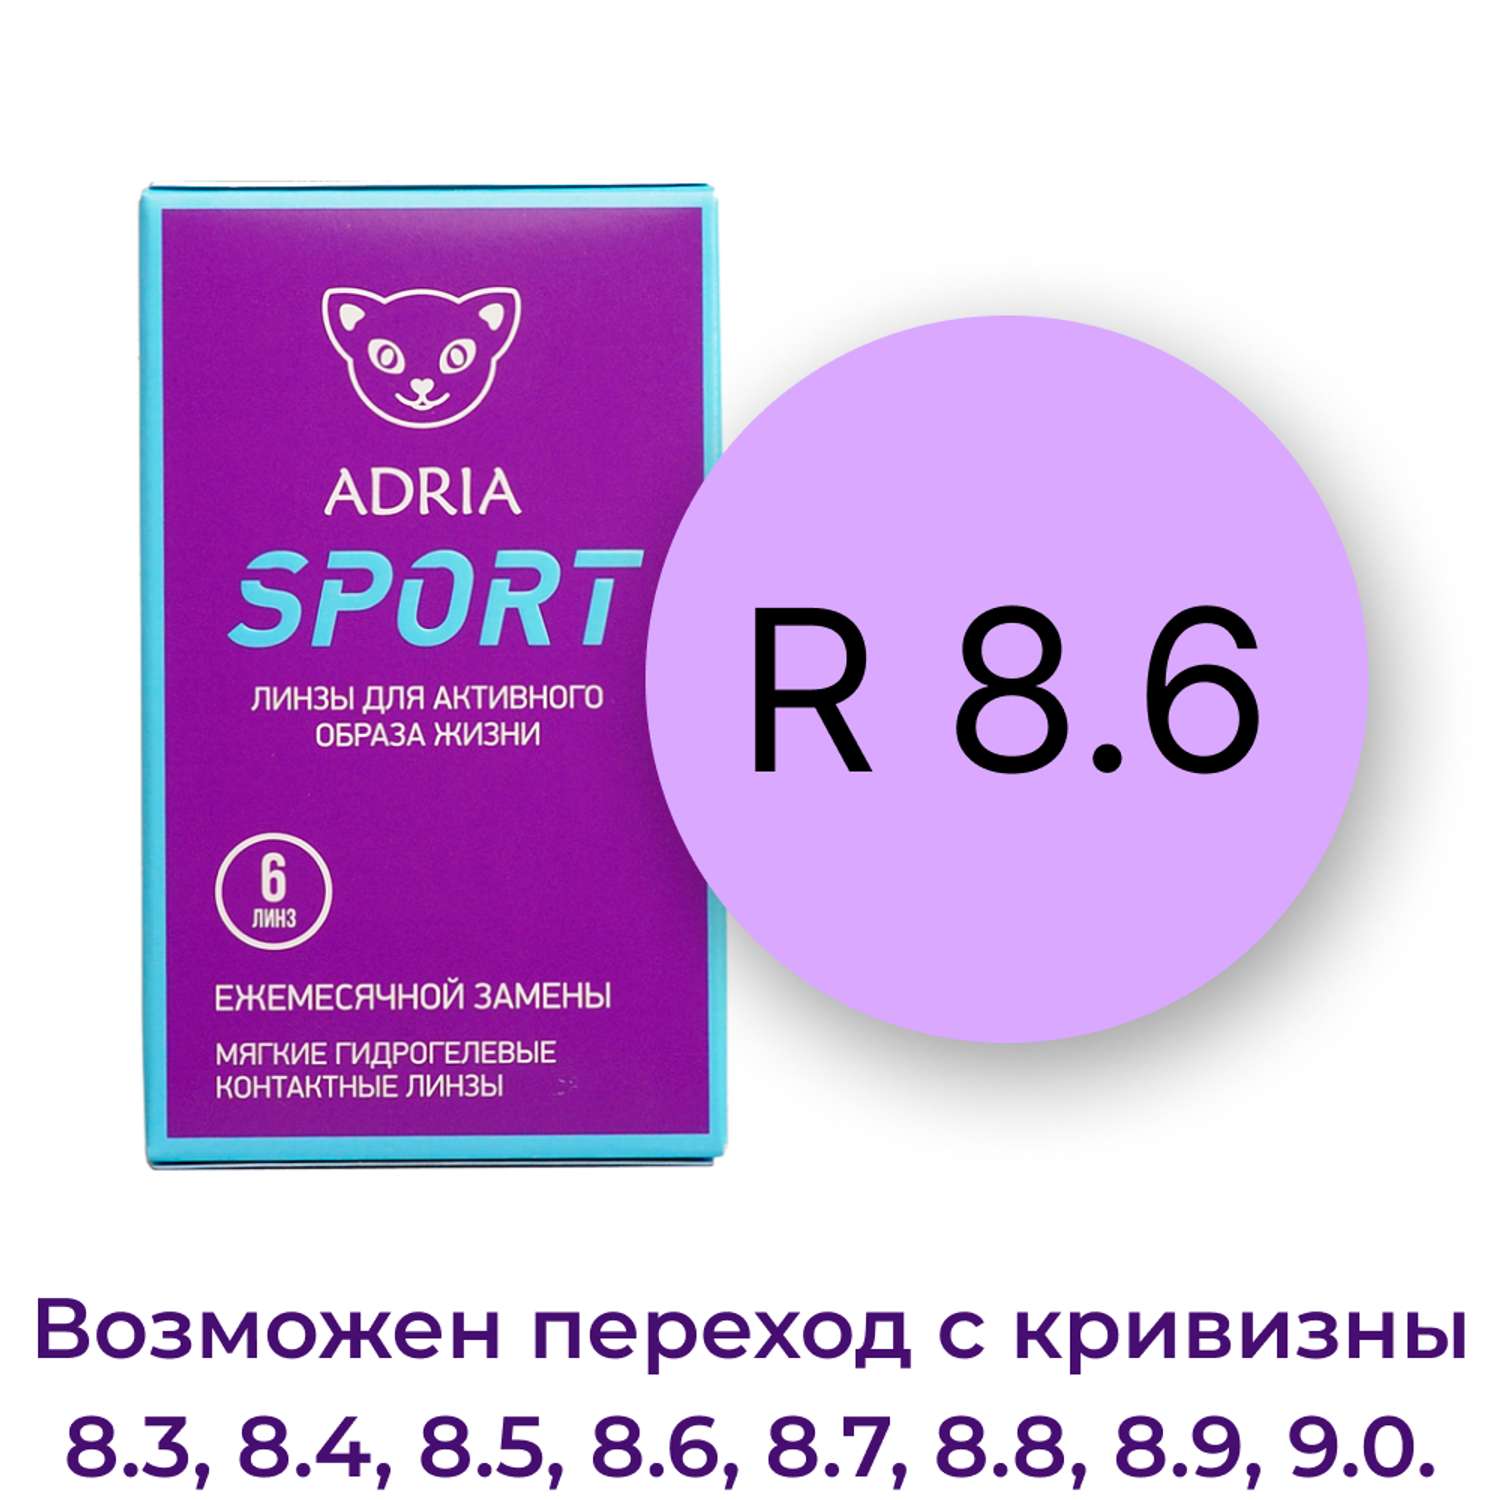 Контактные линзы ADRIA Sport 6 линз R 8.6 -5.00 - фото 3